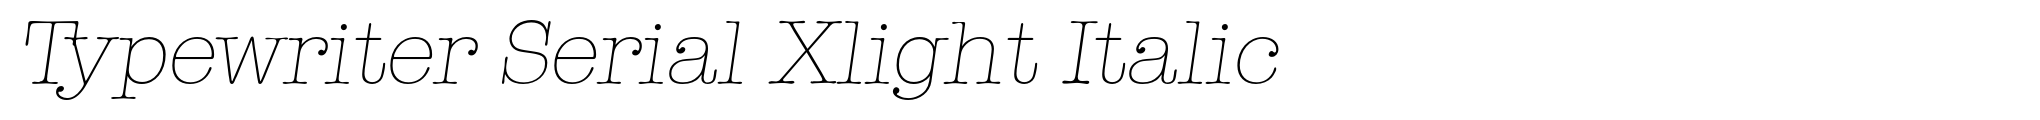 Typewriter Serial Xlight Italic image